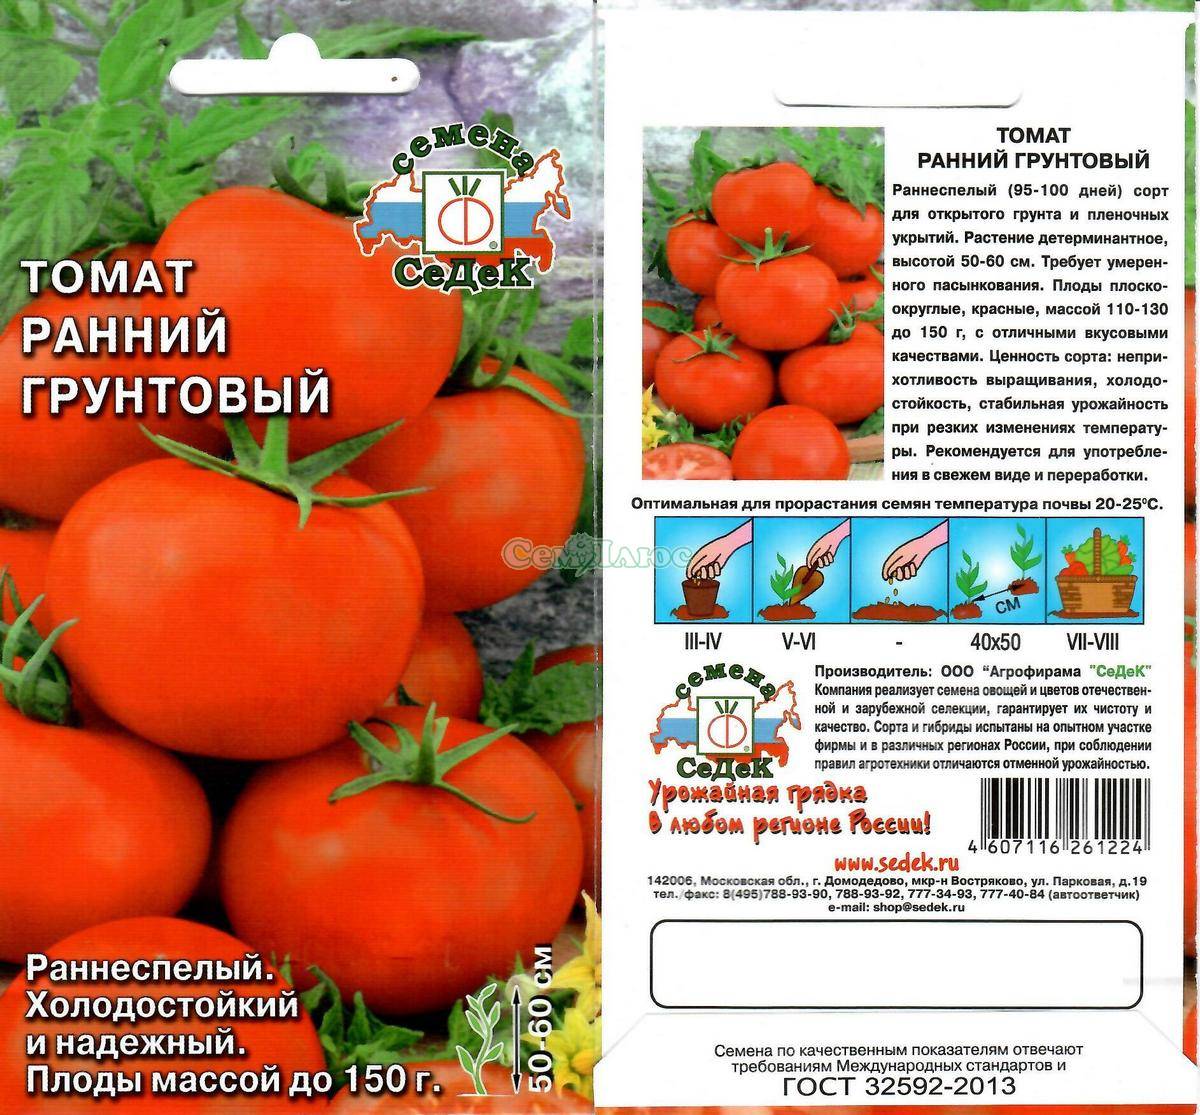 Томат "ранний-83": описание сорта, урожайность и фото русский фермер